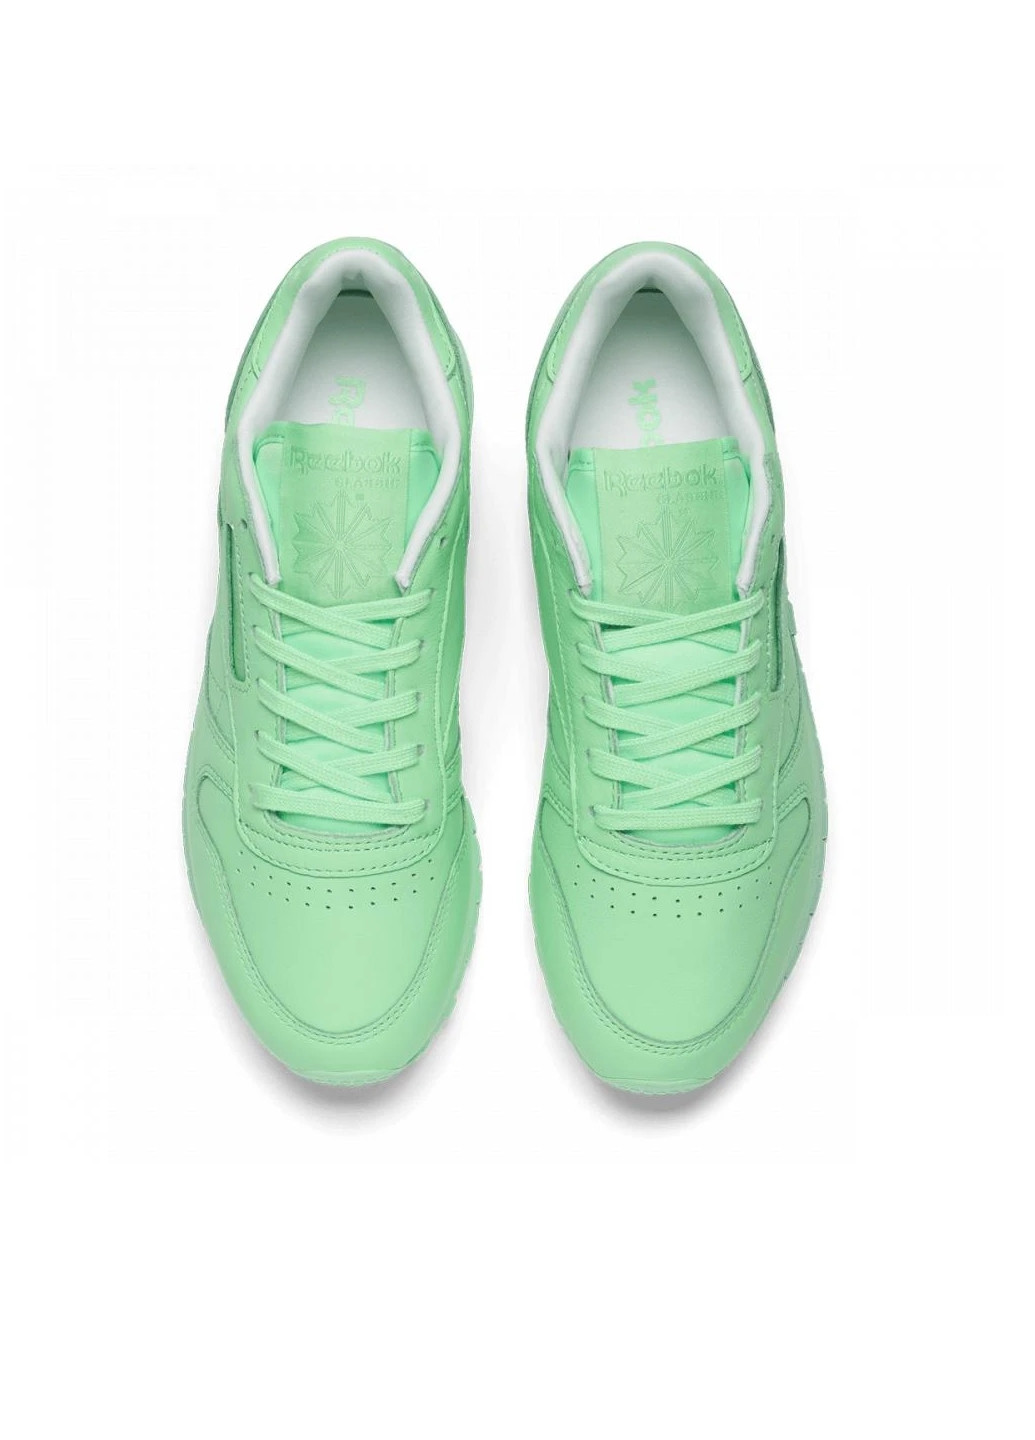 Зеленые демисезонные женские кроссовки Reebok X SPIRIT CLASSIC LEATHER MINT GREEN